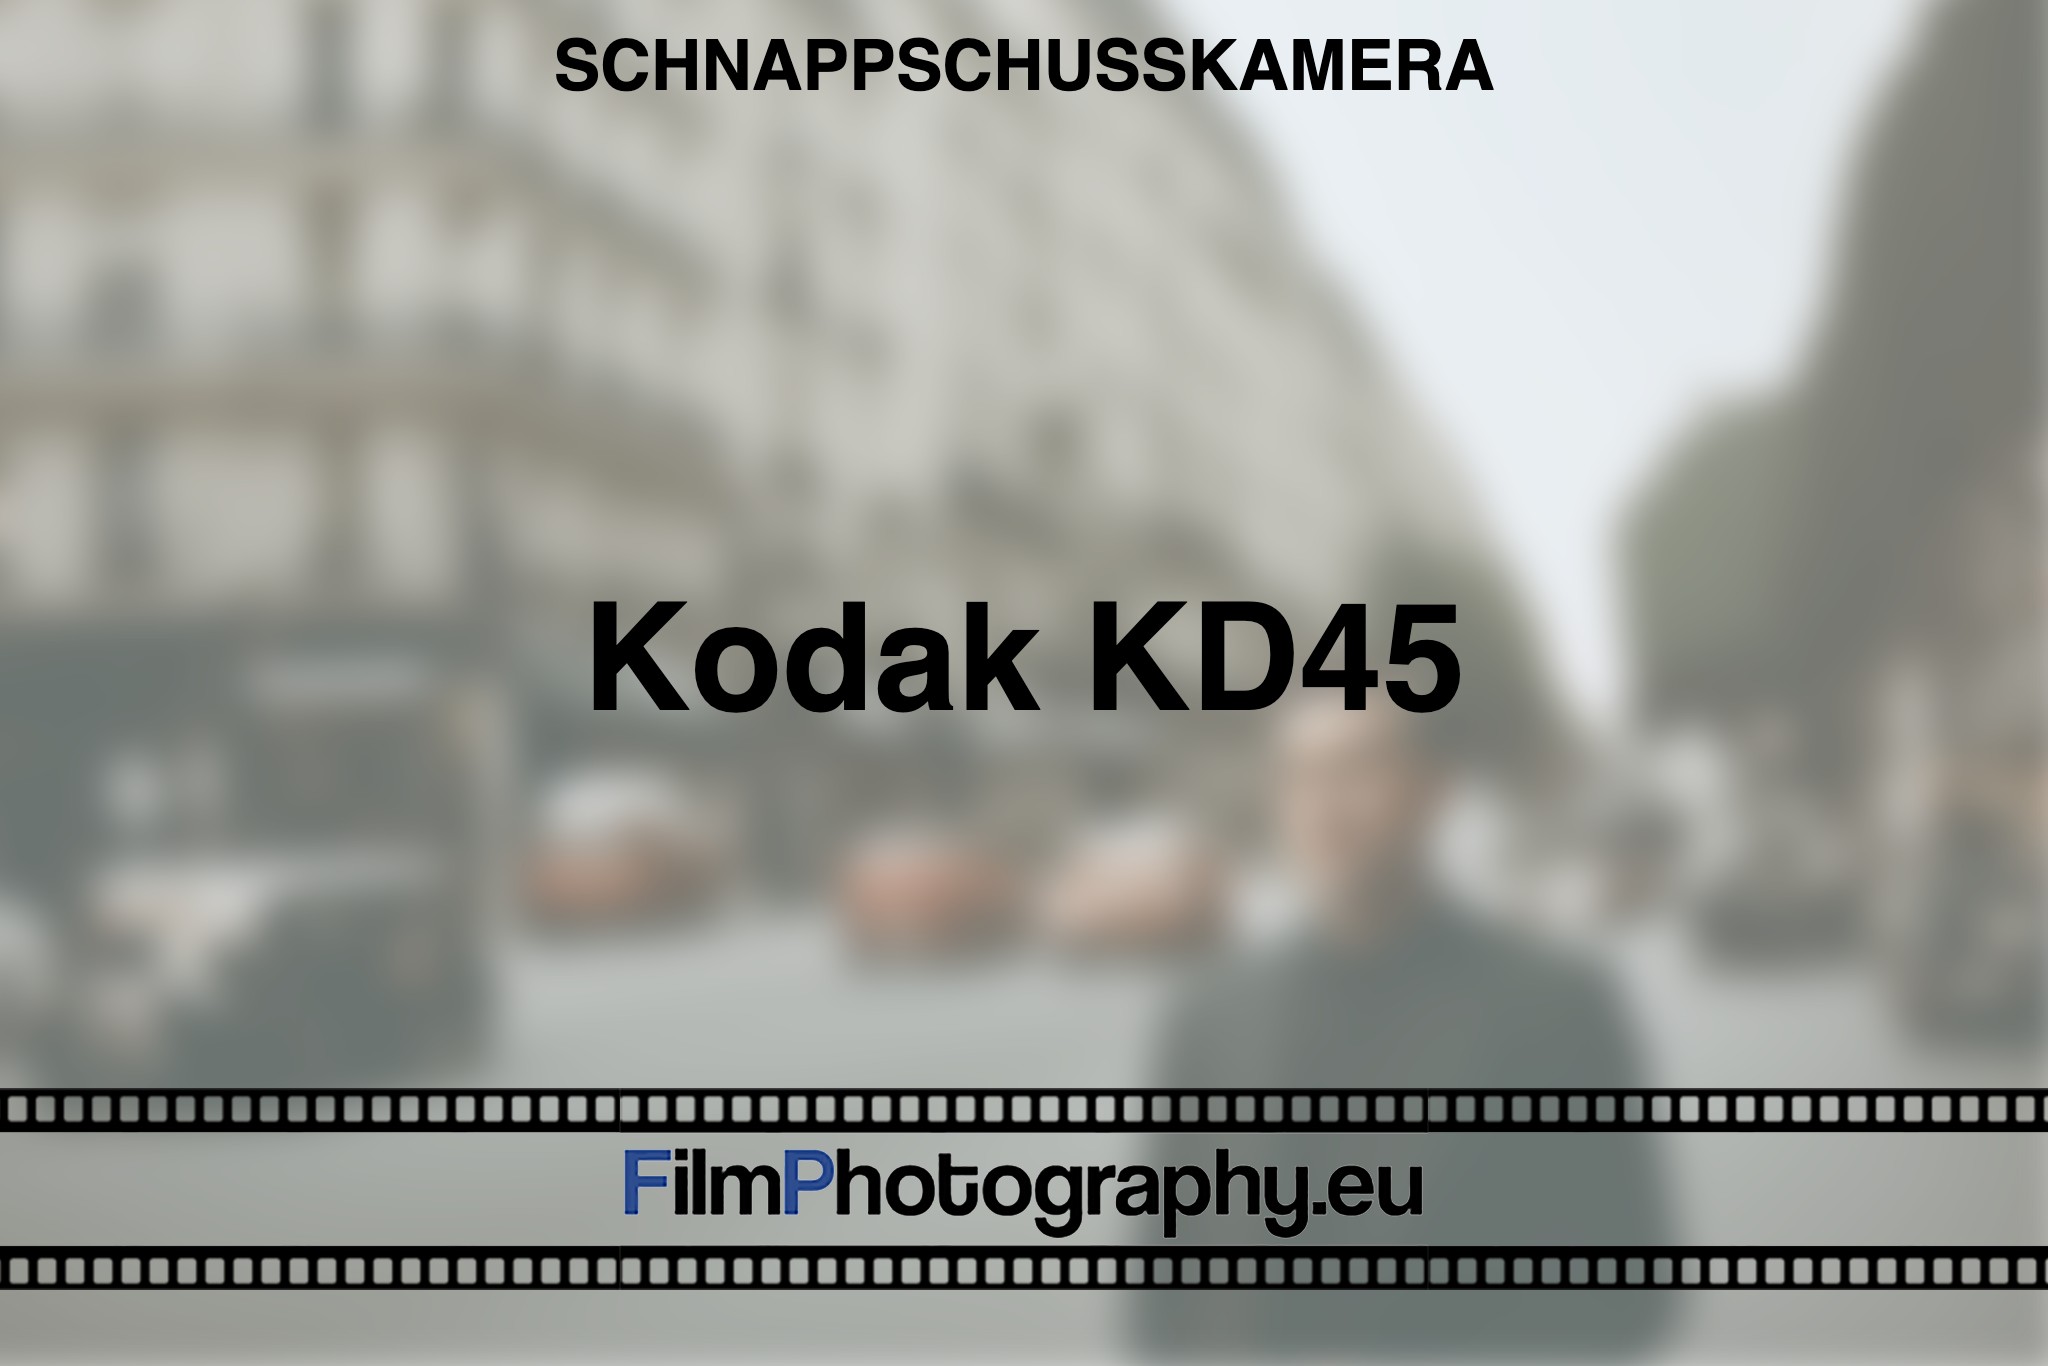 kodak-kd45-schnappschusskamera-bnv